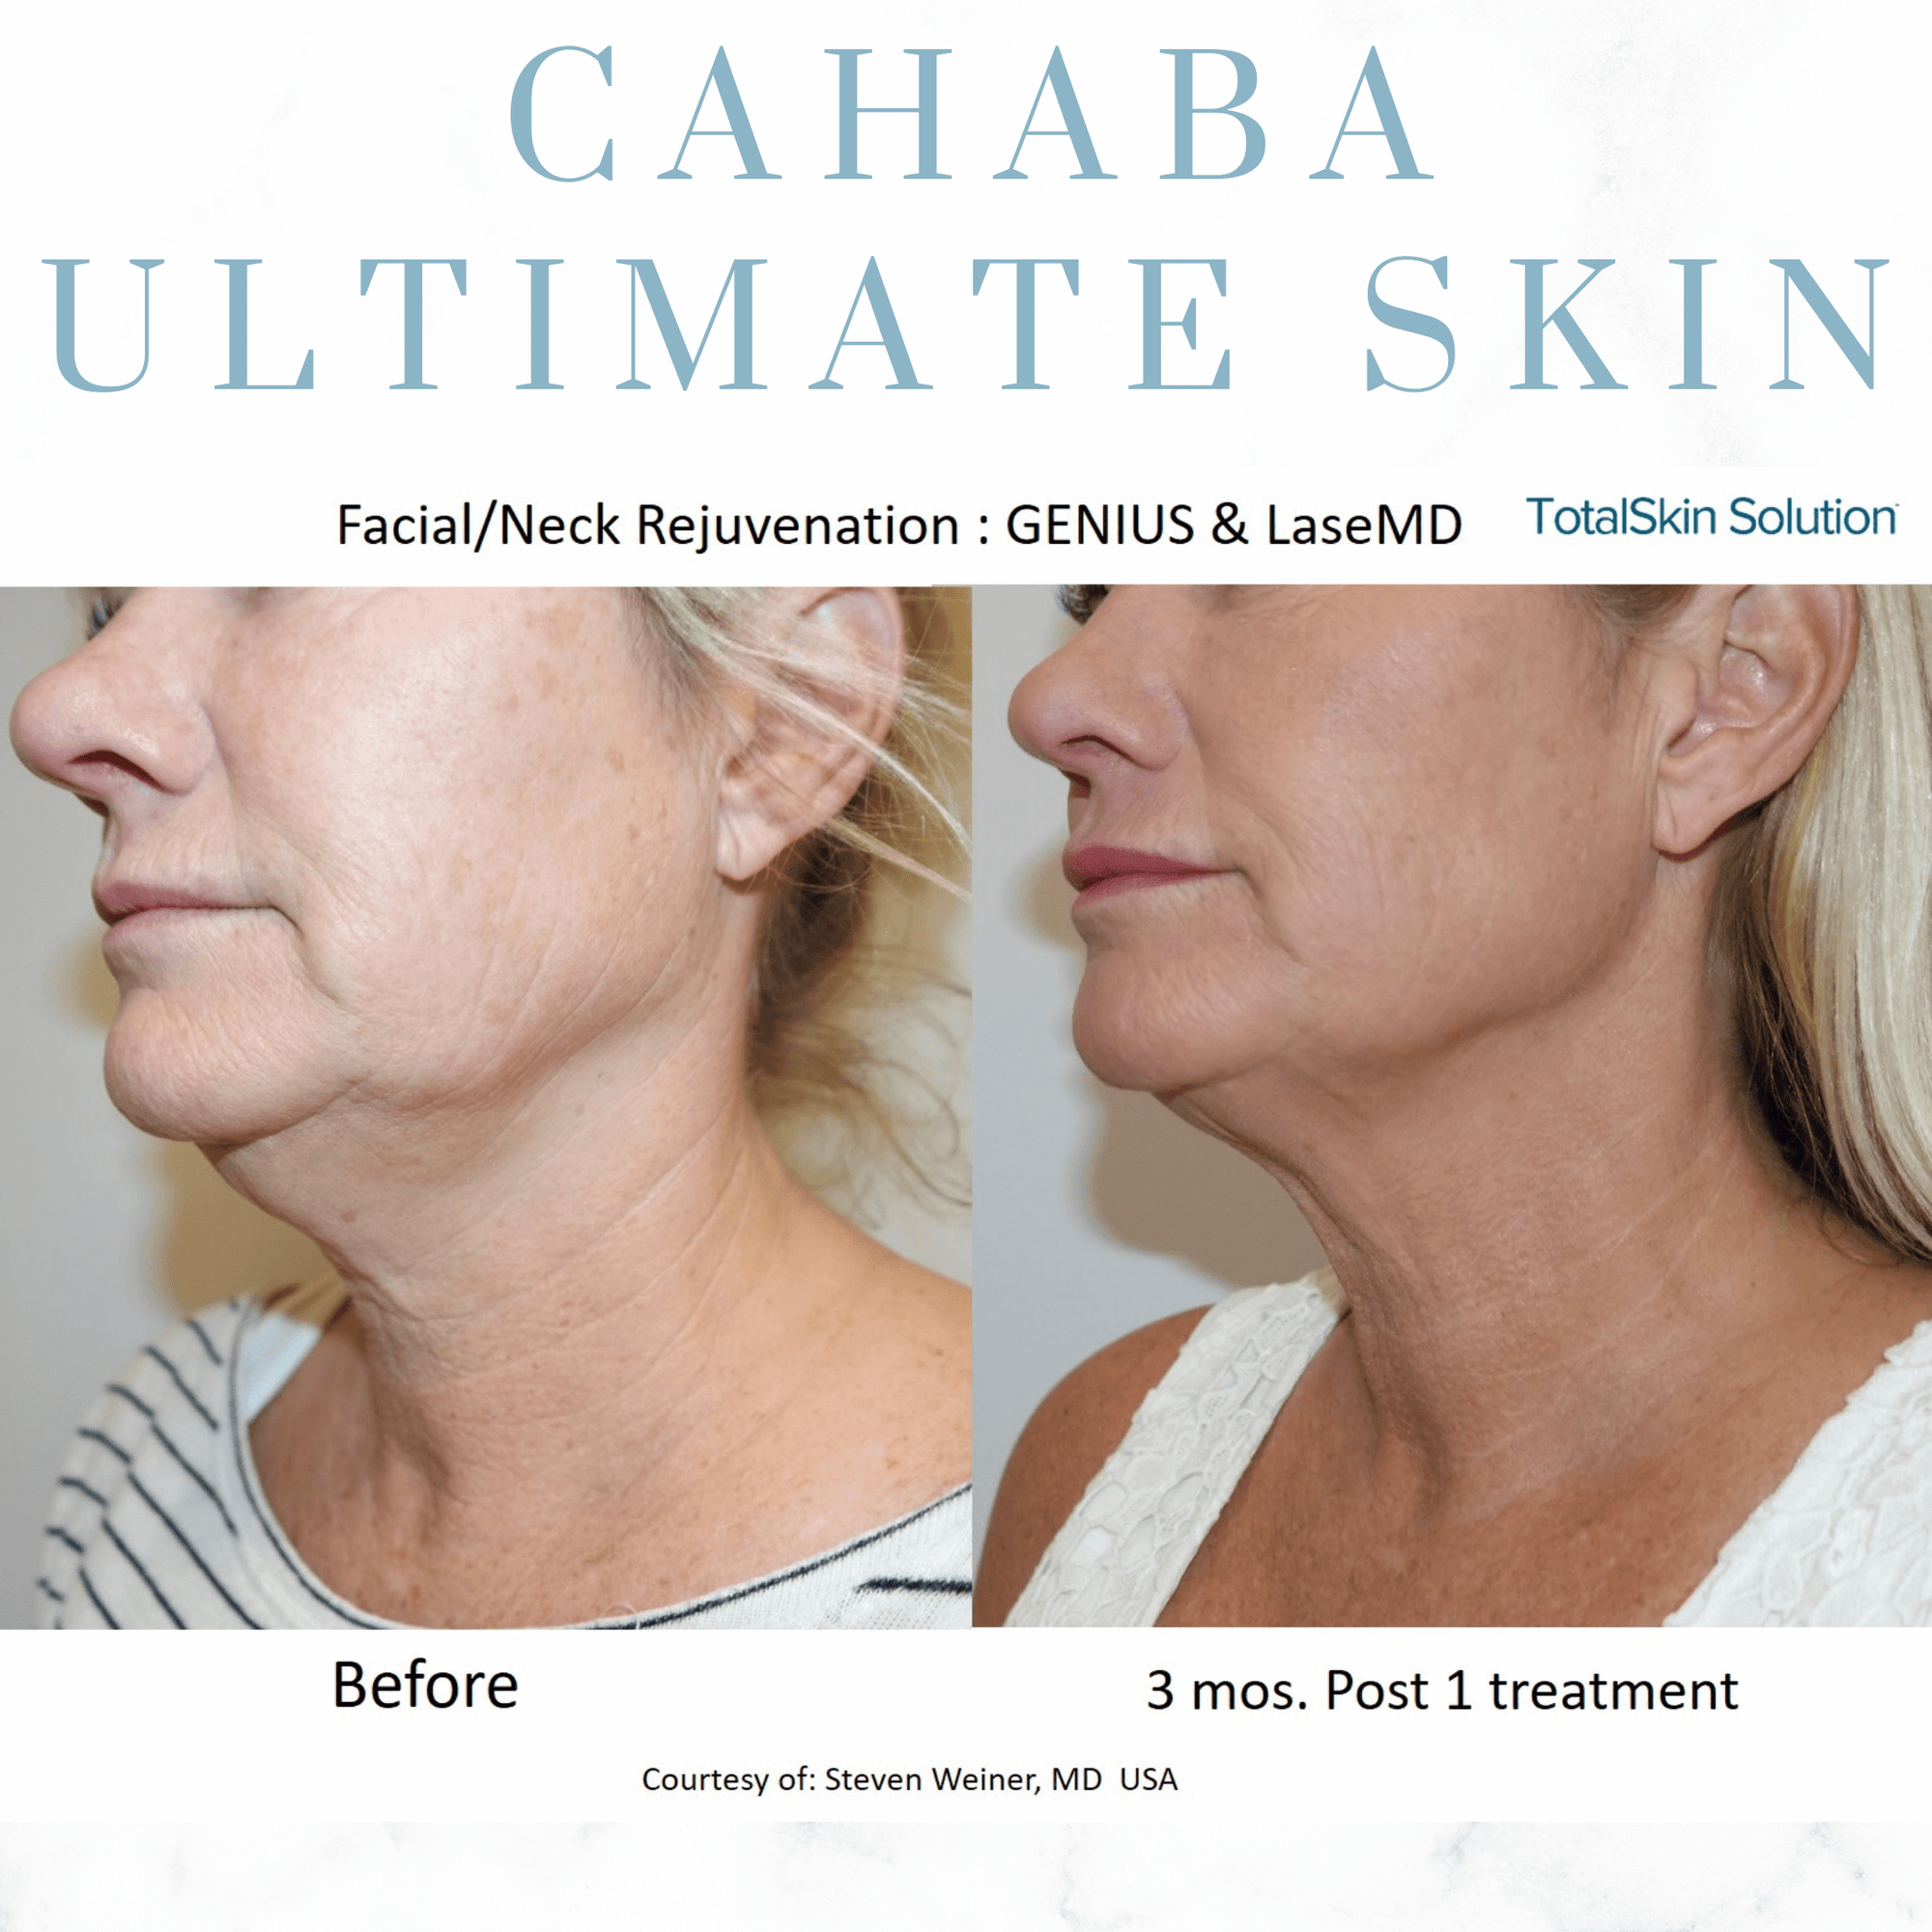 Cahaba Ultimate Skin Package - LaseMD + Genius RF Microneedling